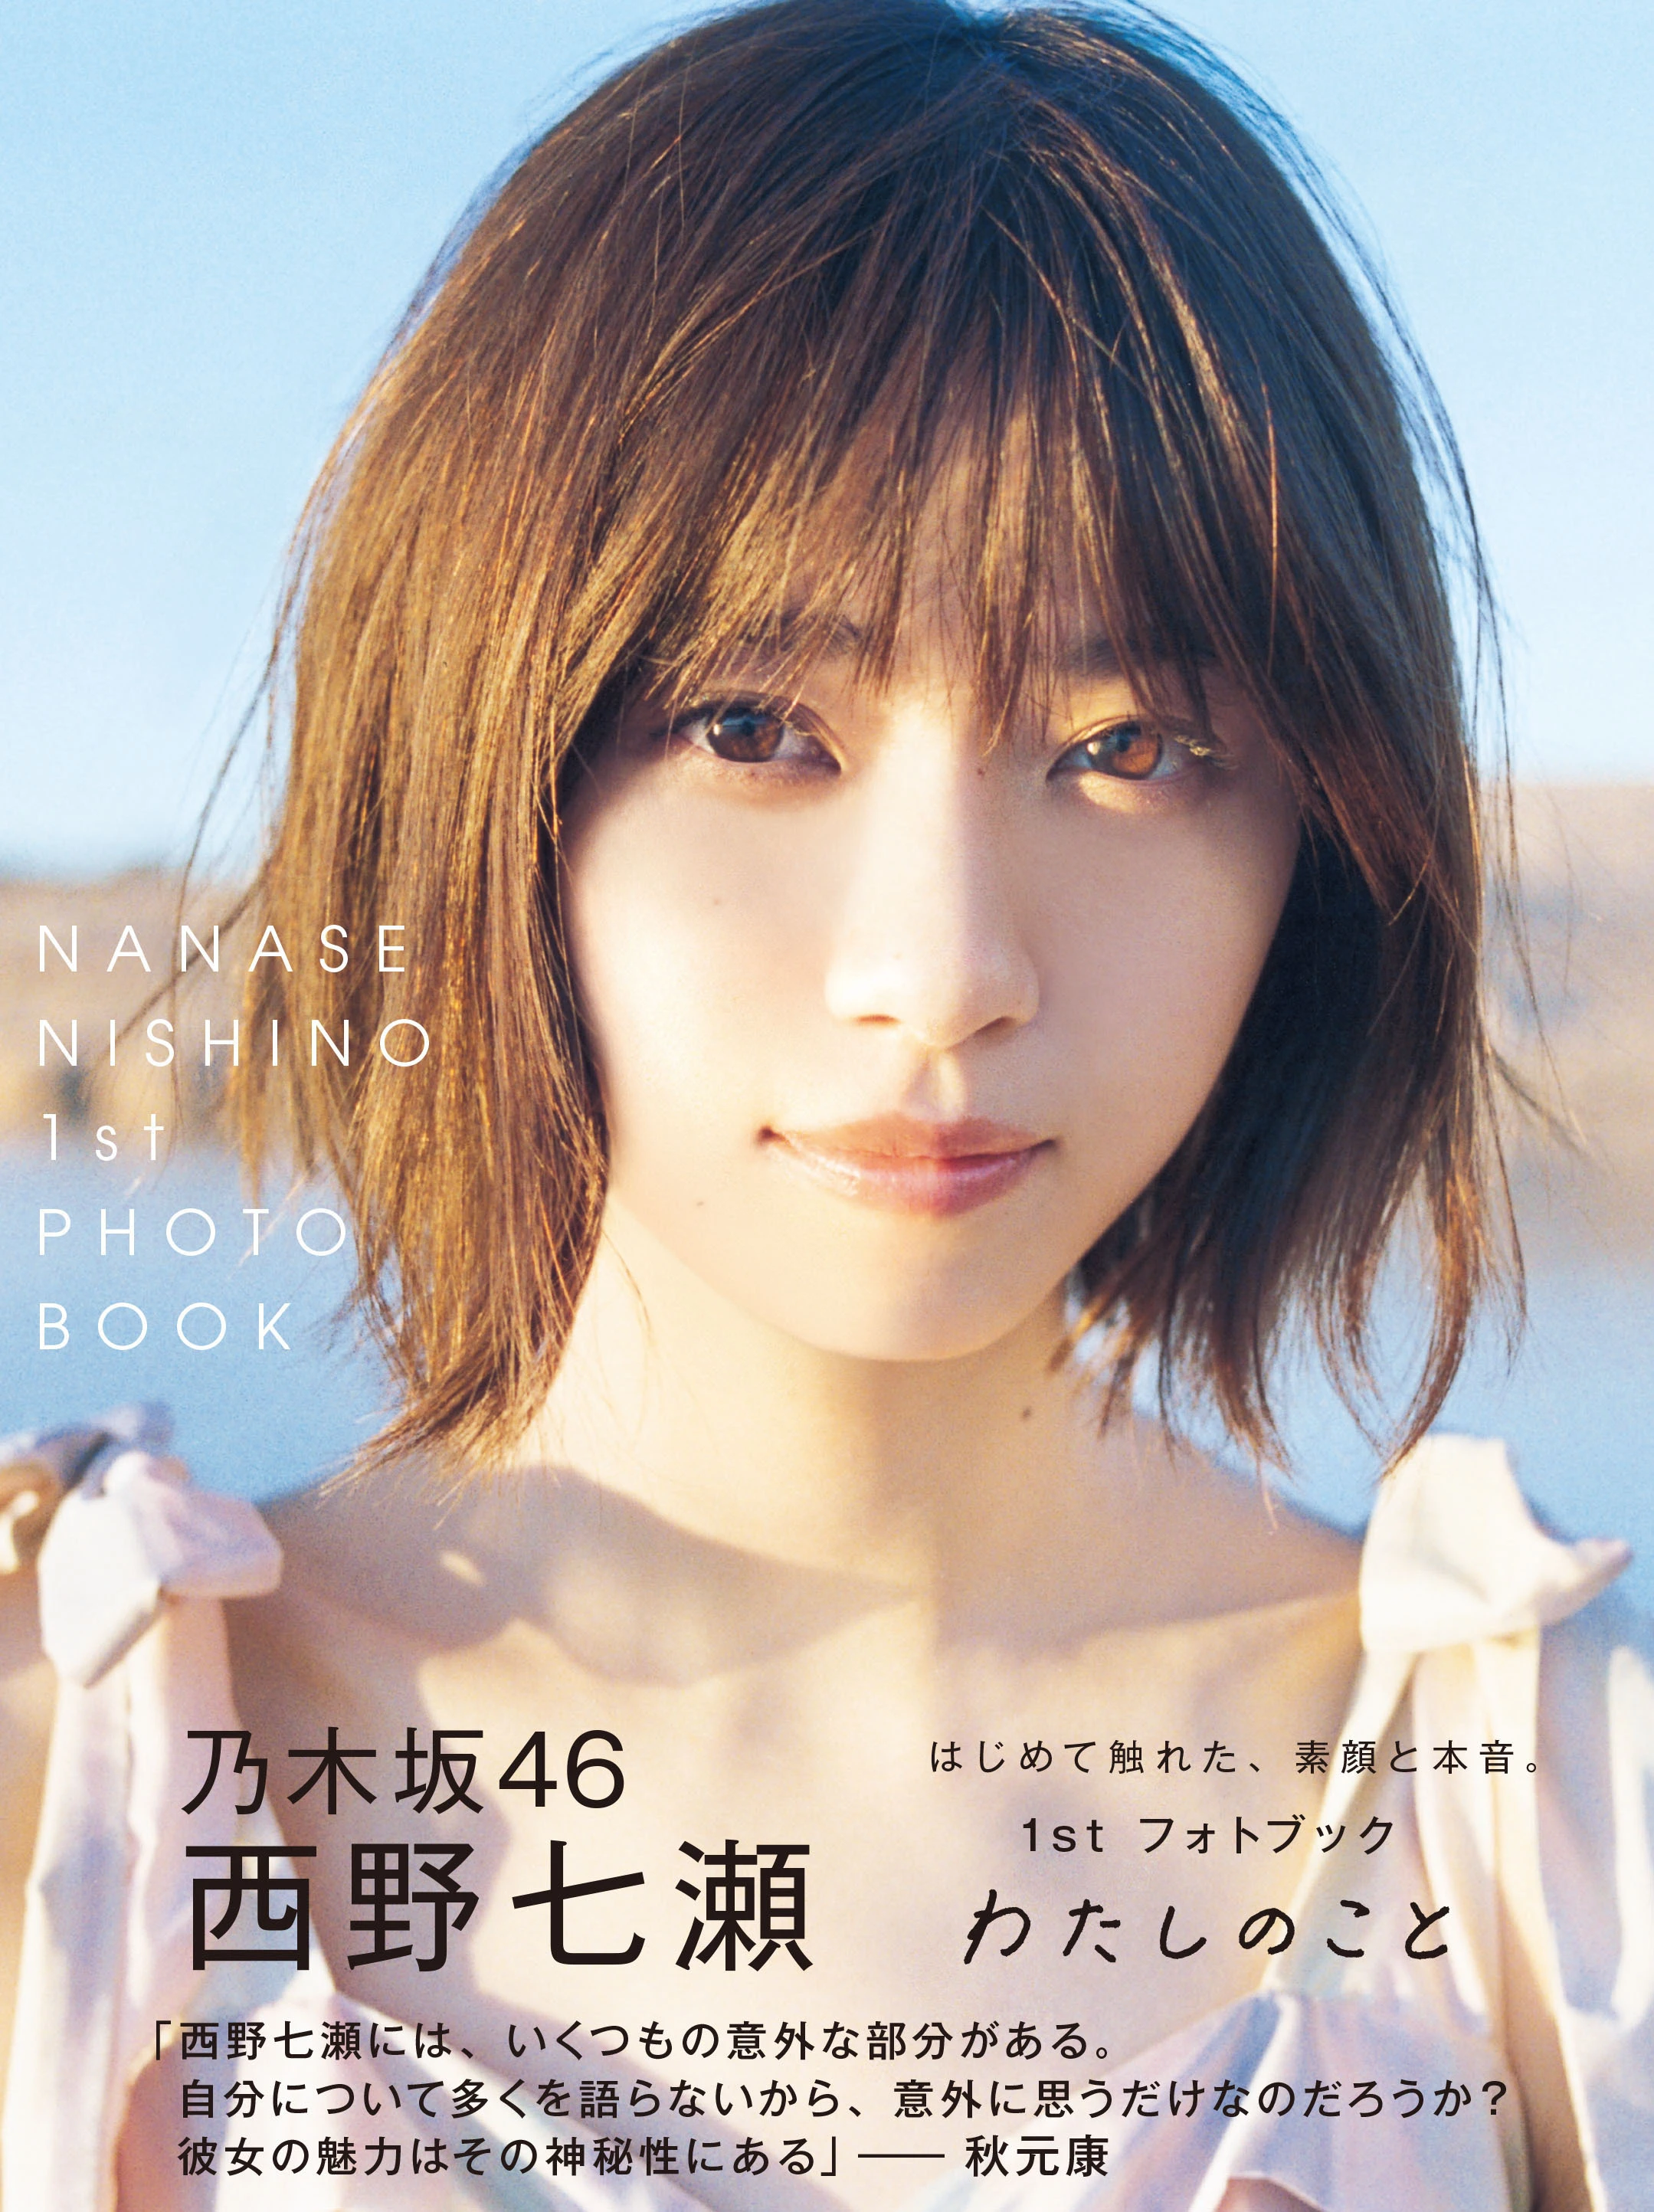 乃木坂46・西野七瀬1stフォトブック『わたしのこと』now on sale 